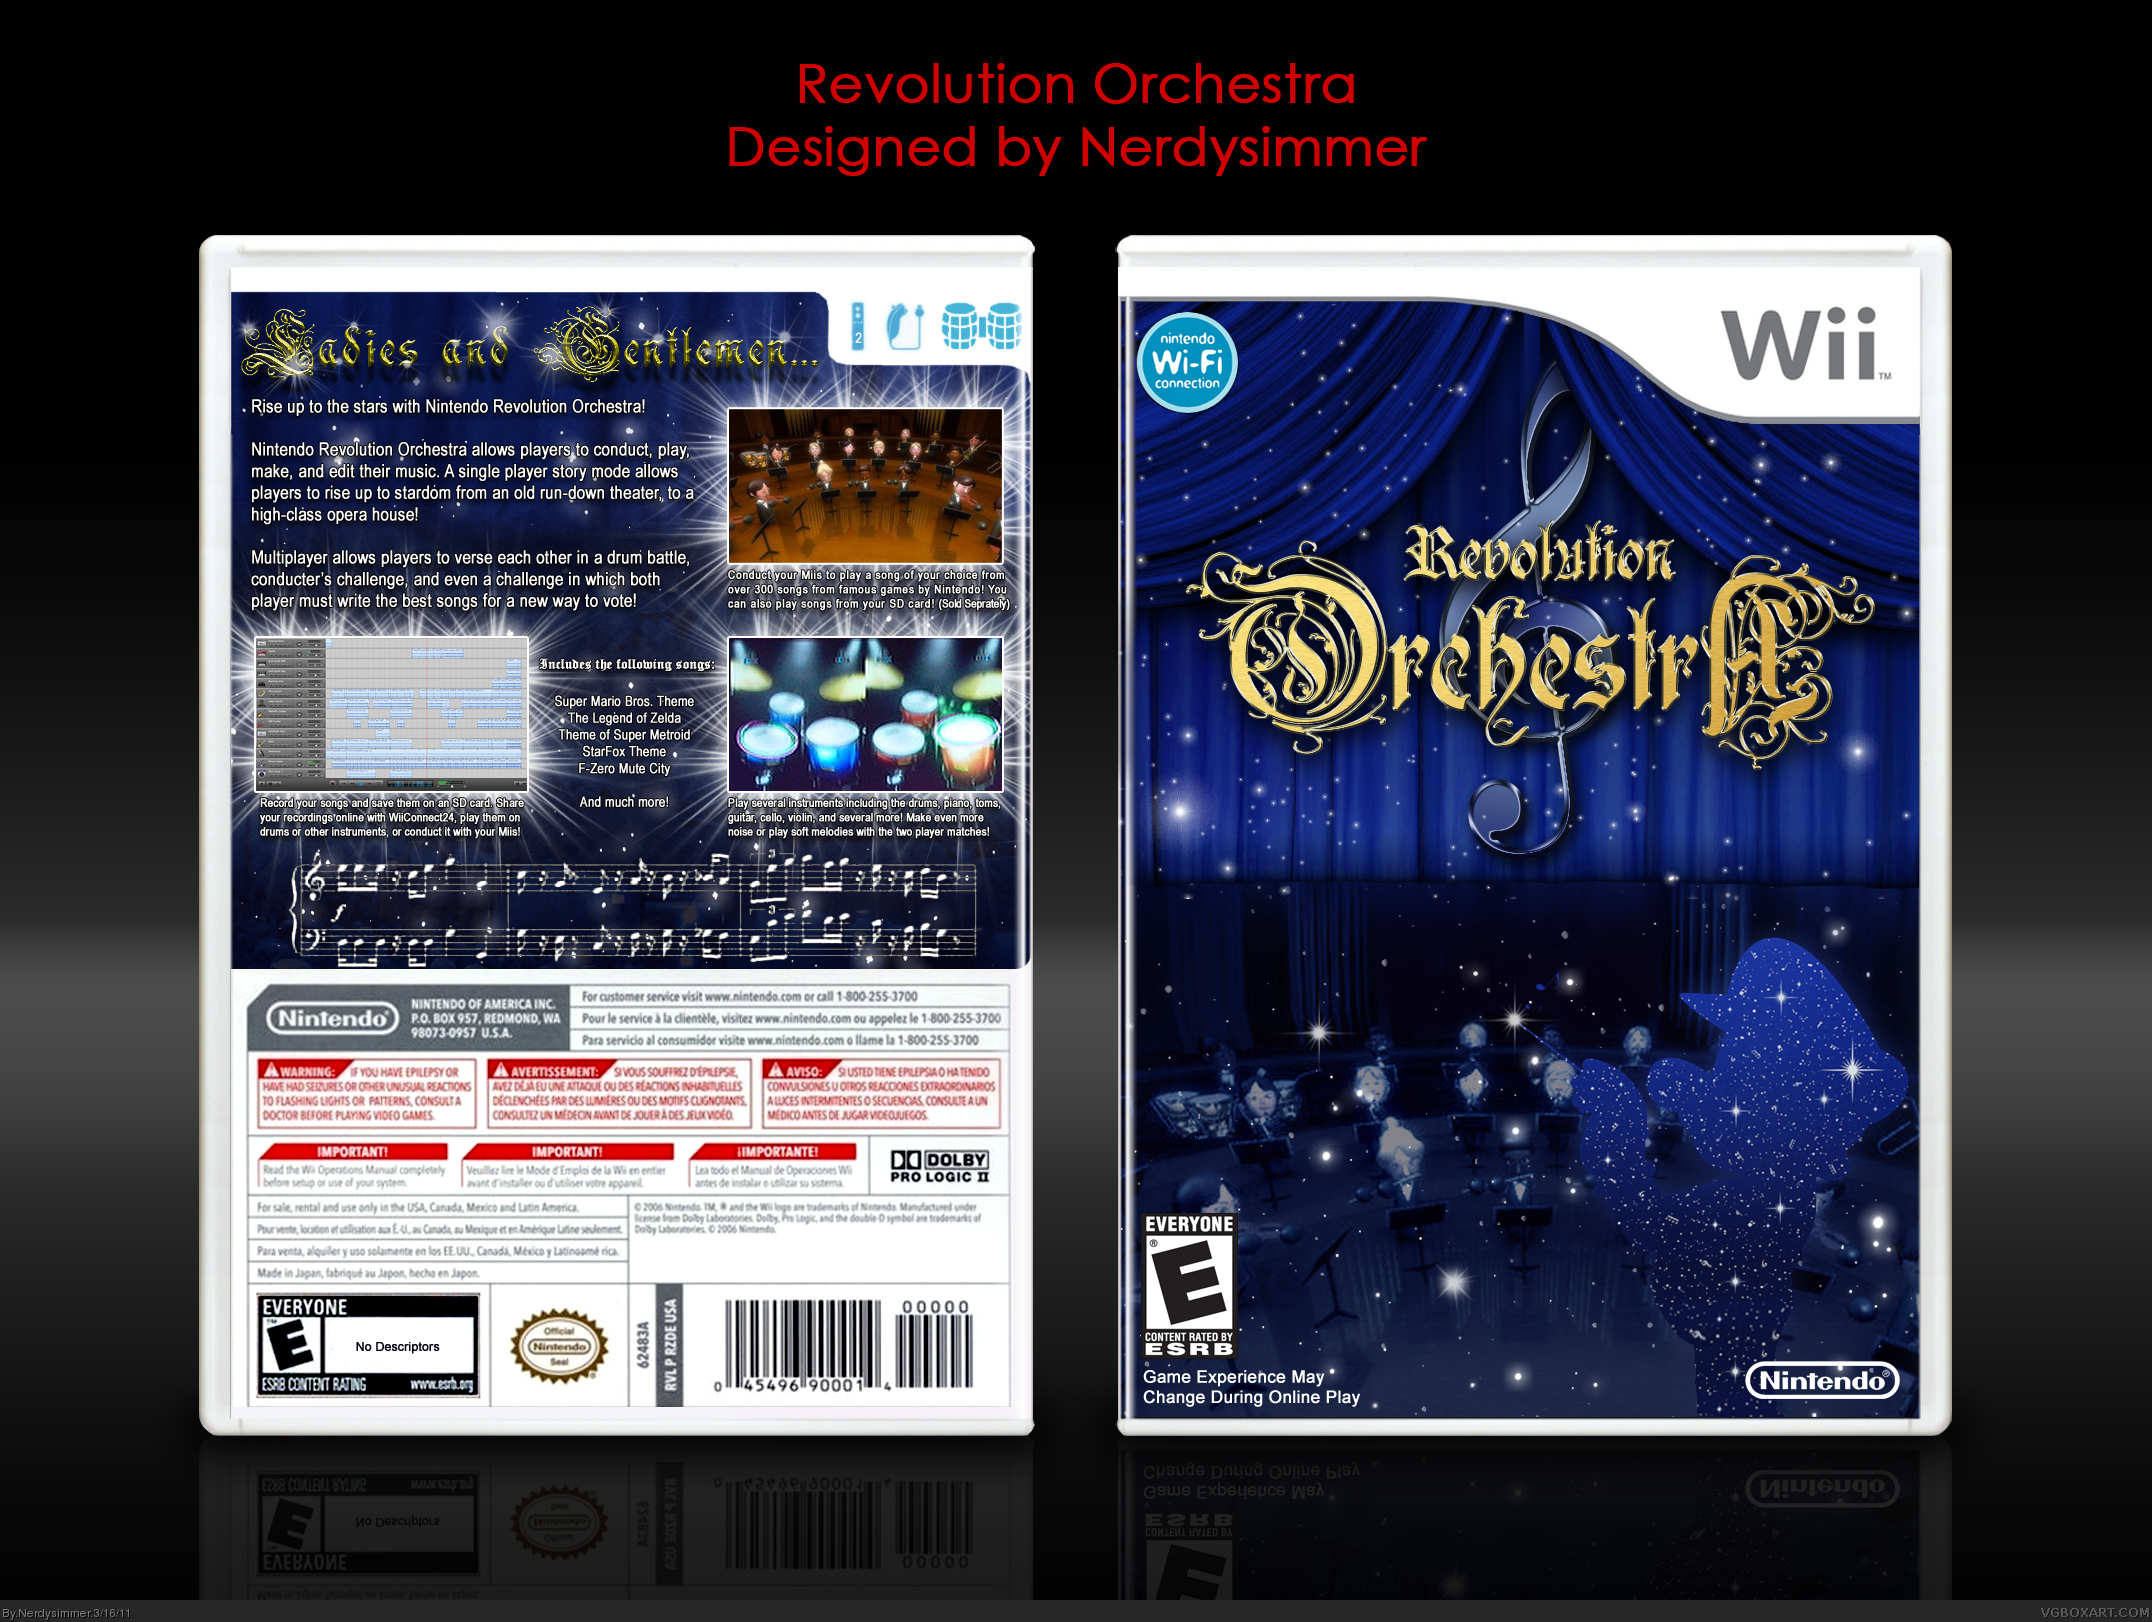 Nintendo Revolution Orchestra box cover